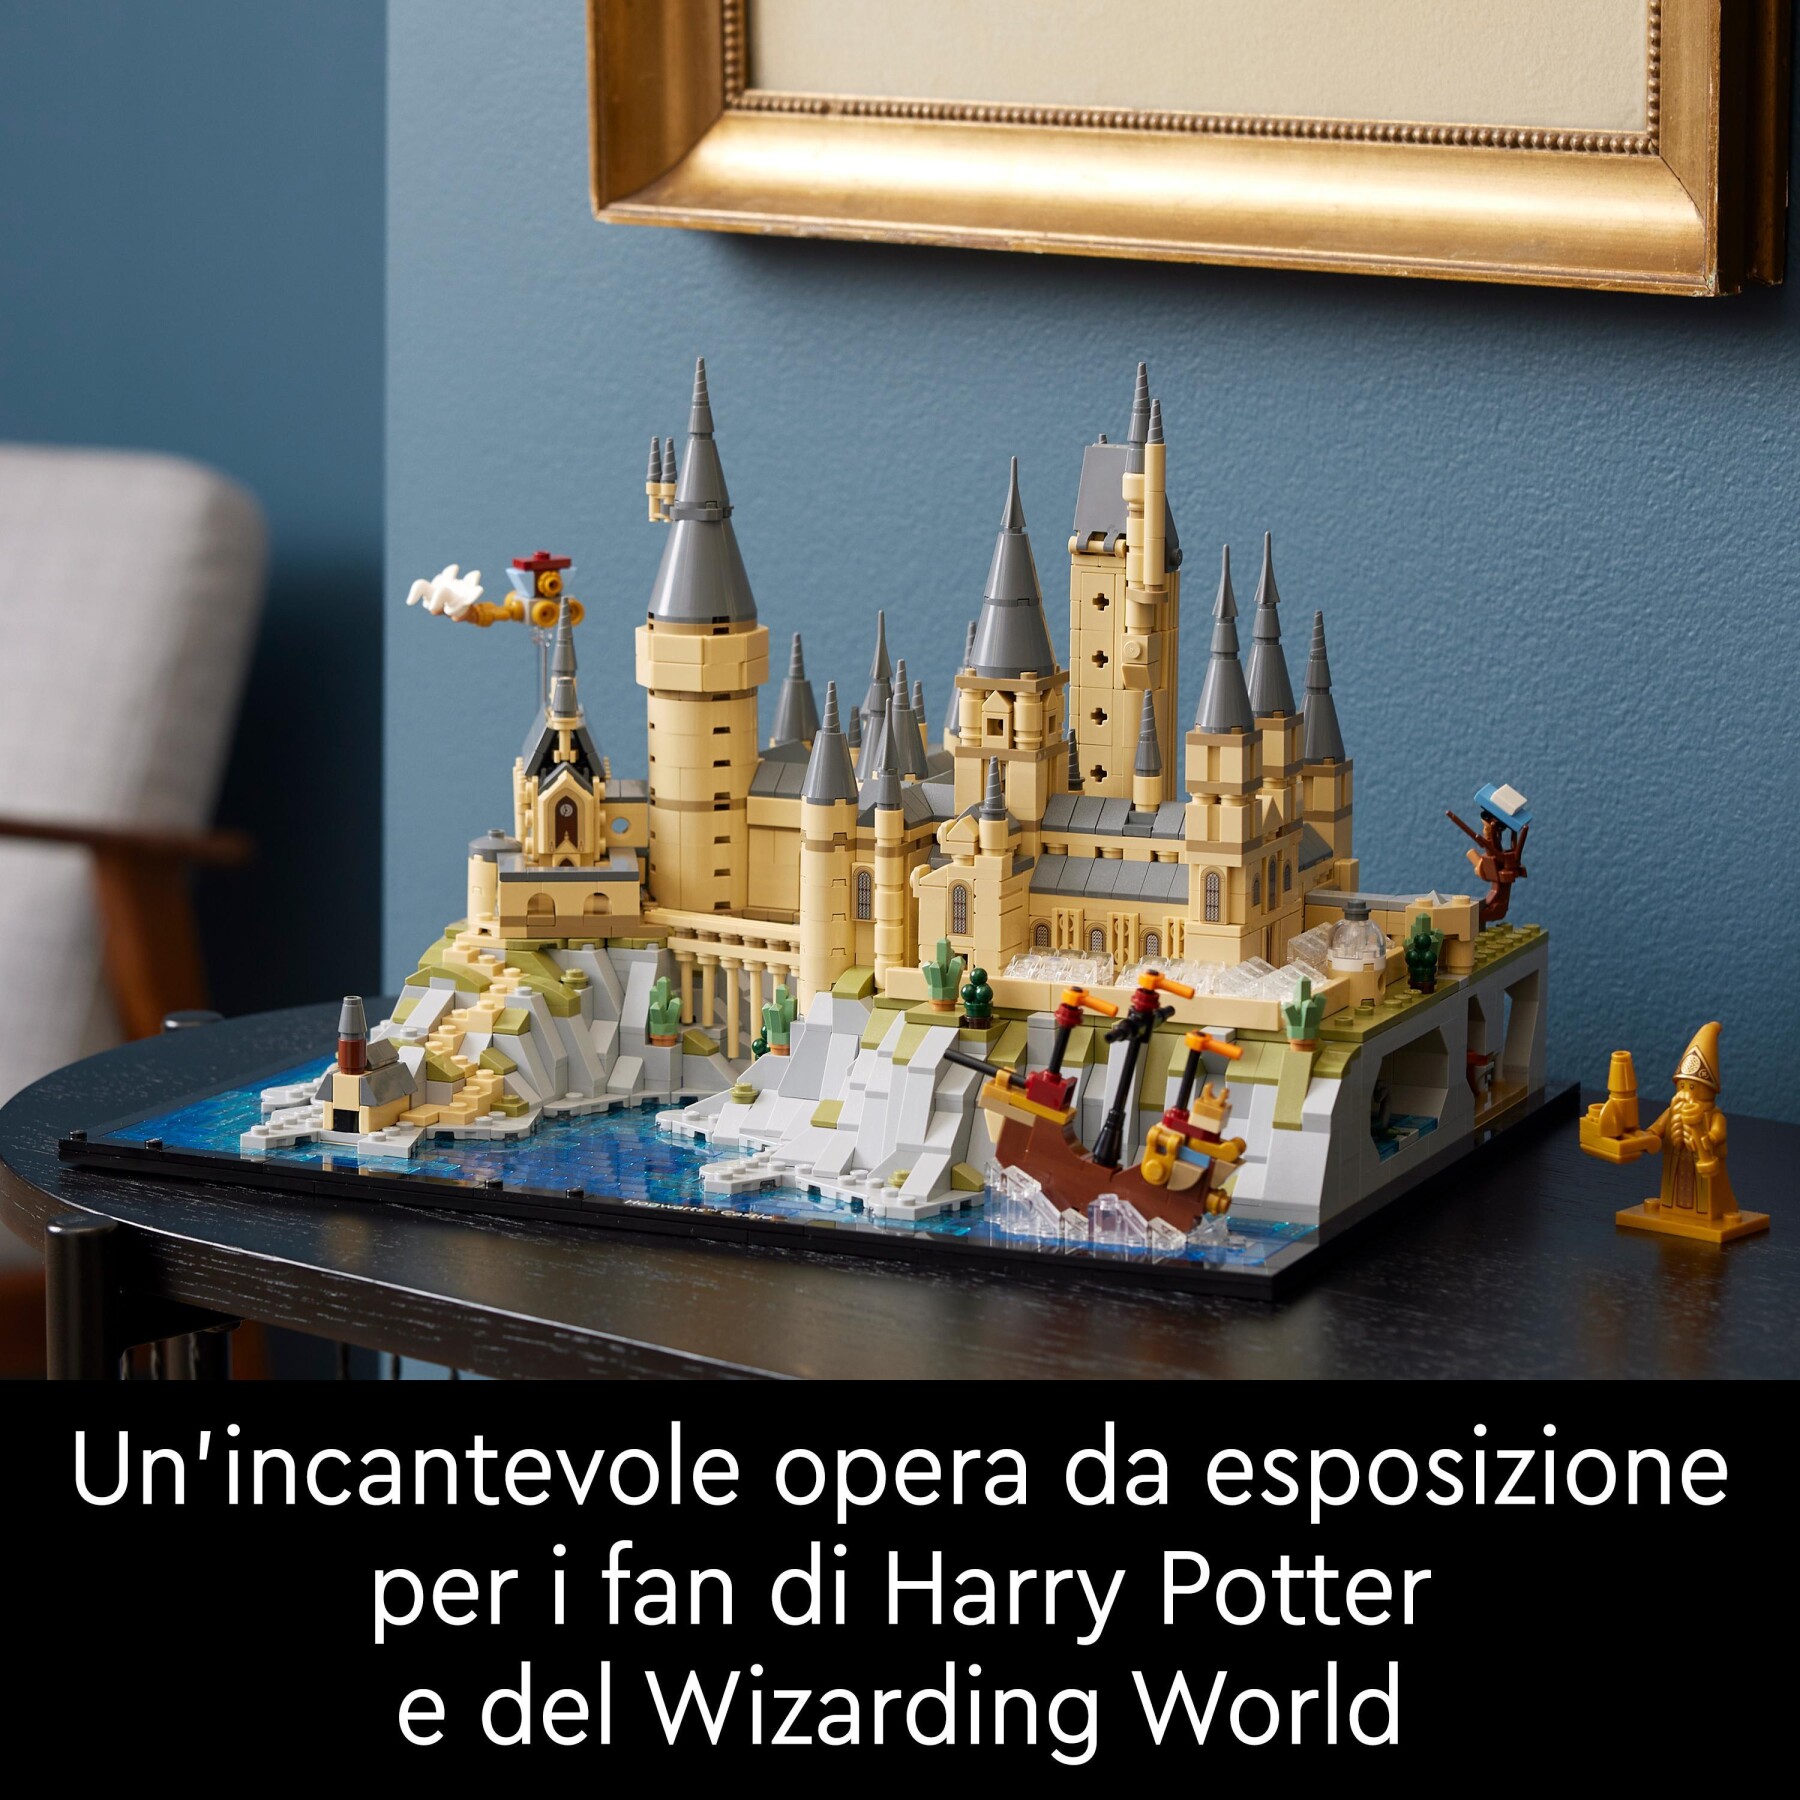 Lego harry potter 76419 castello e parco di hogwarts, grande set con torre dell'astronomia, sala grande e camera dei segreti - LEGO® Harry Potter™